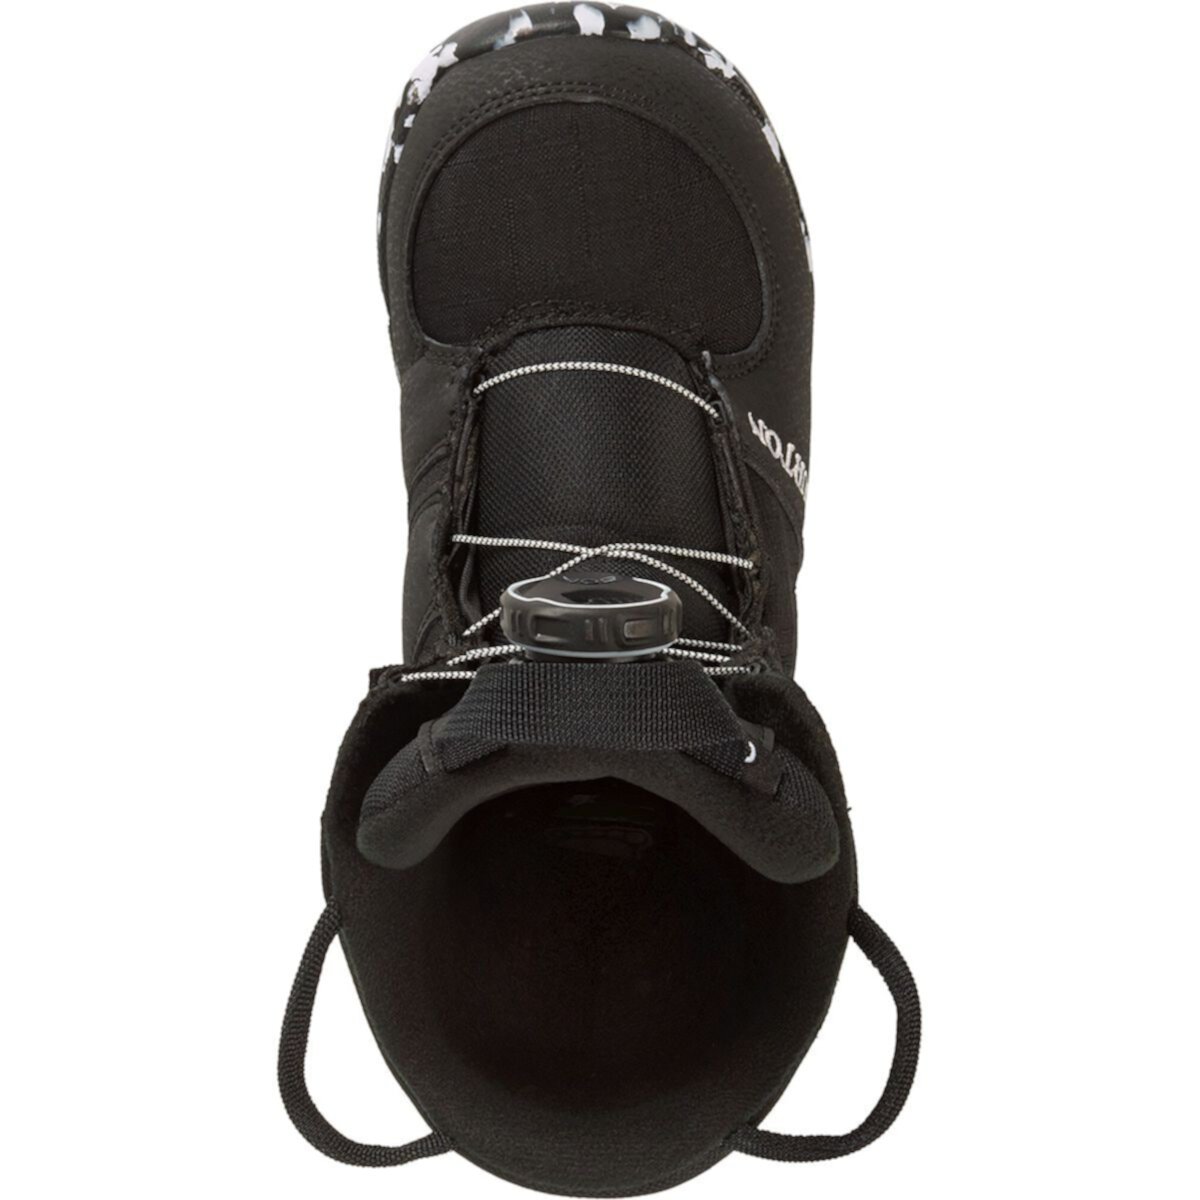 Ботинки для сноуборда Grom BOA - 2024 Burton